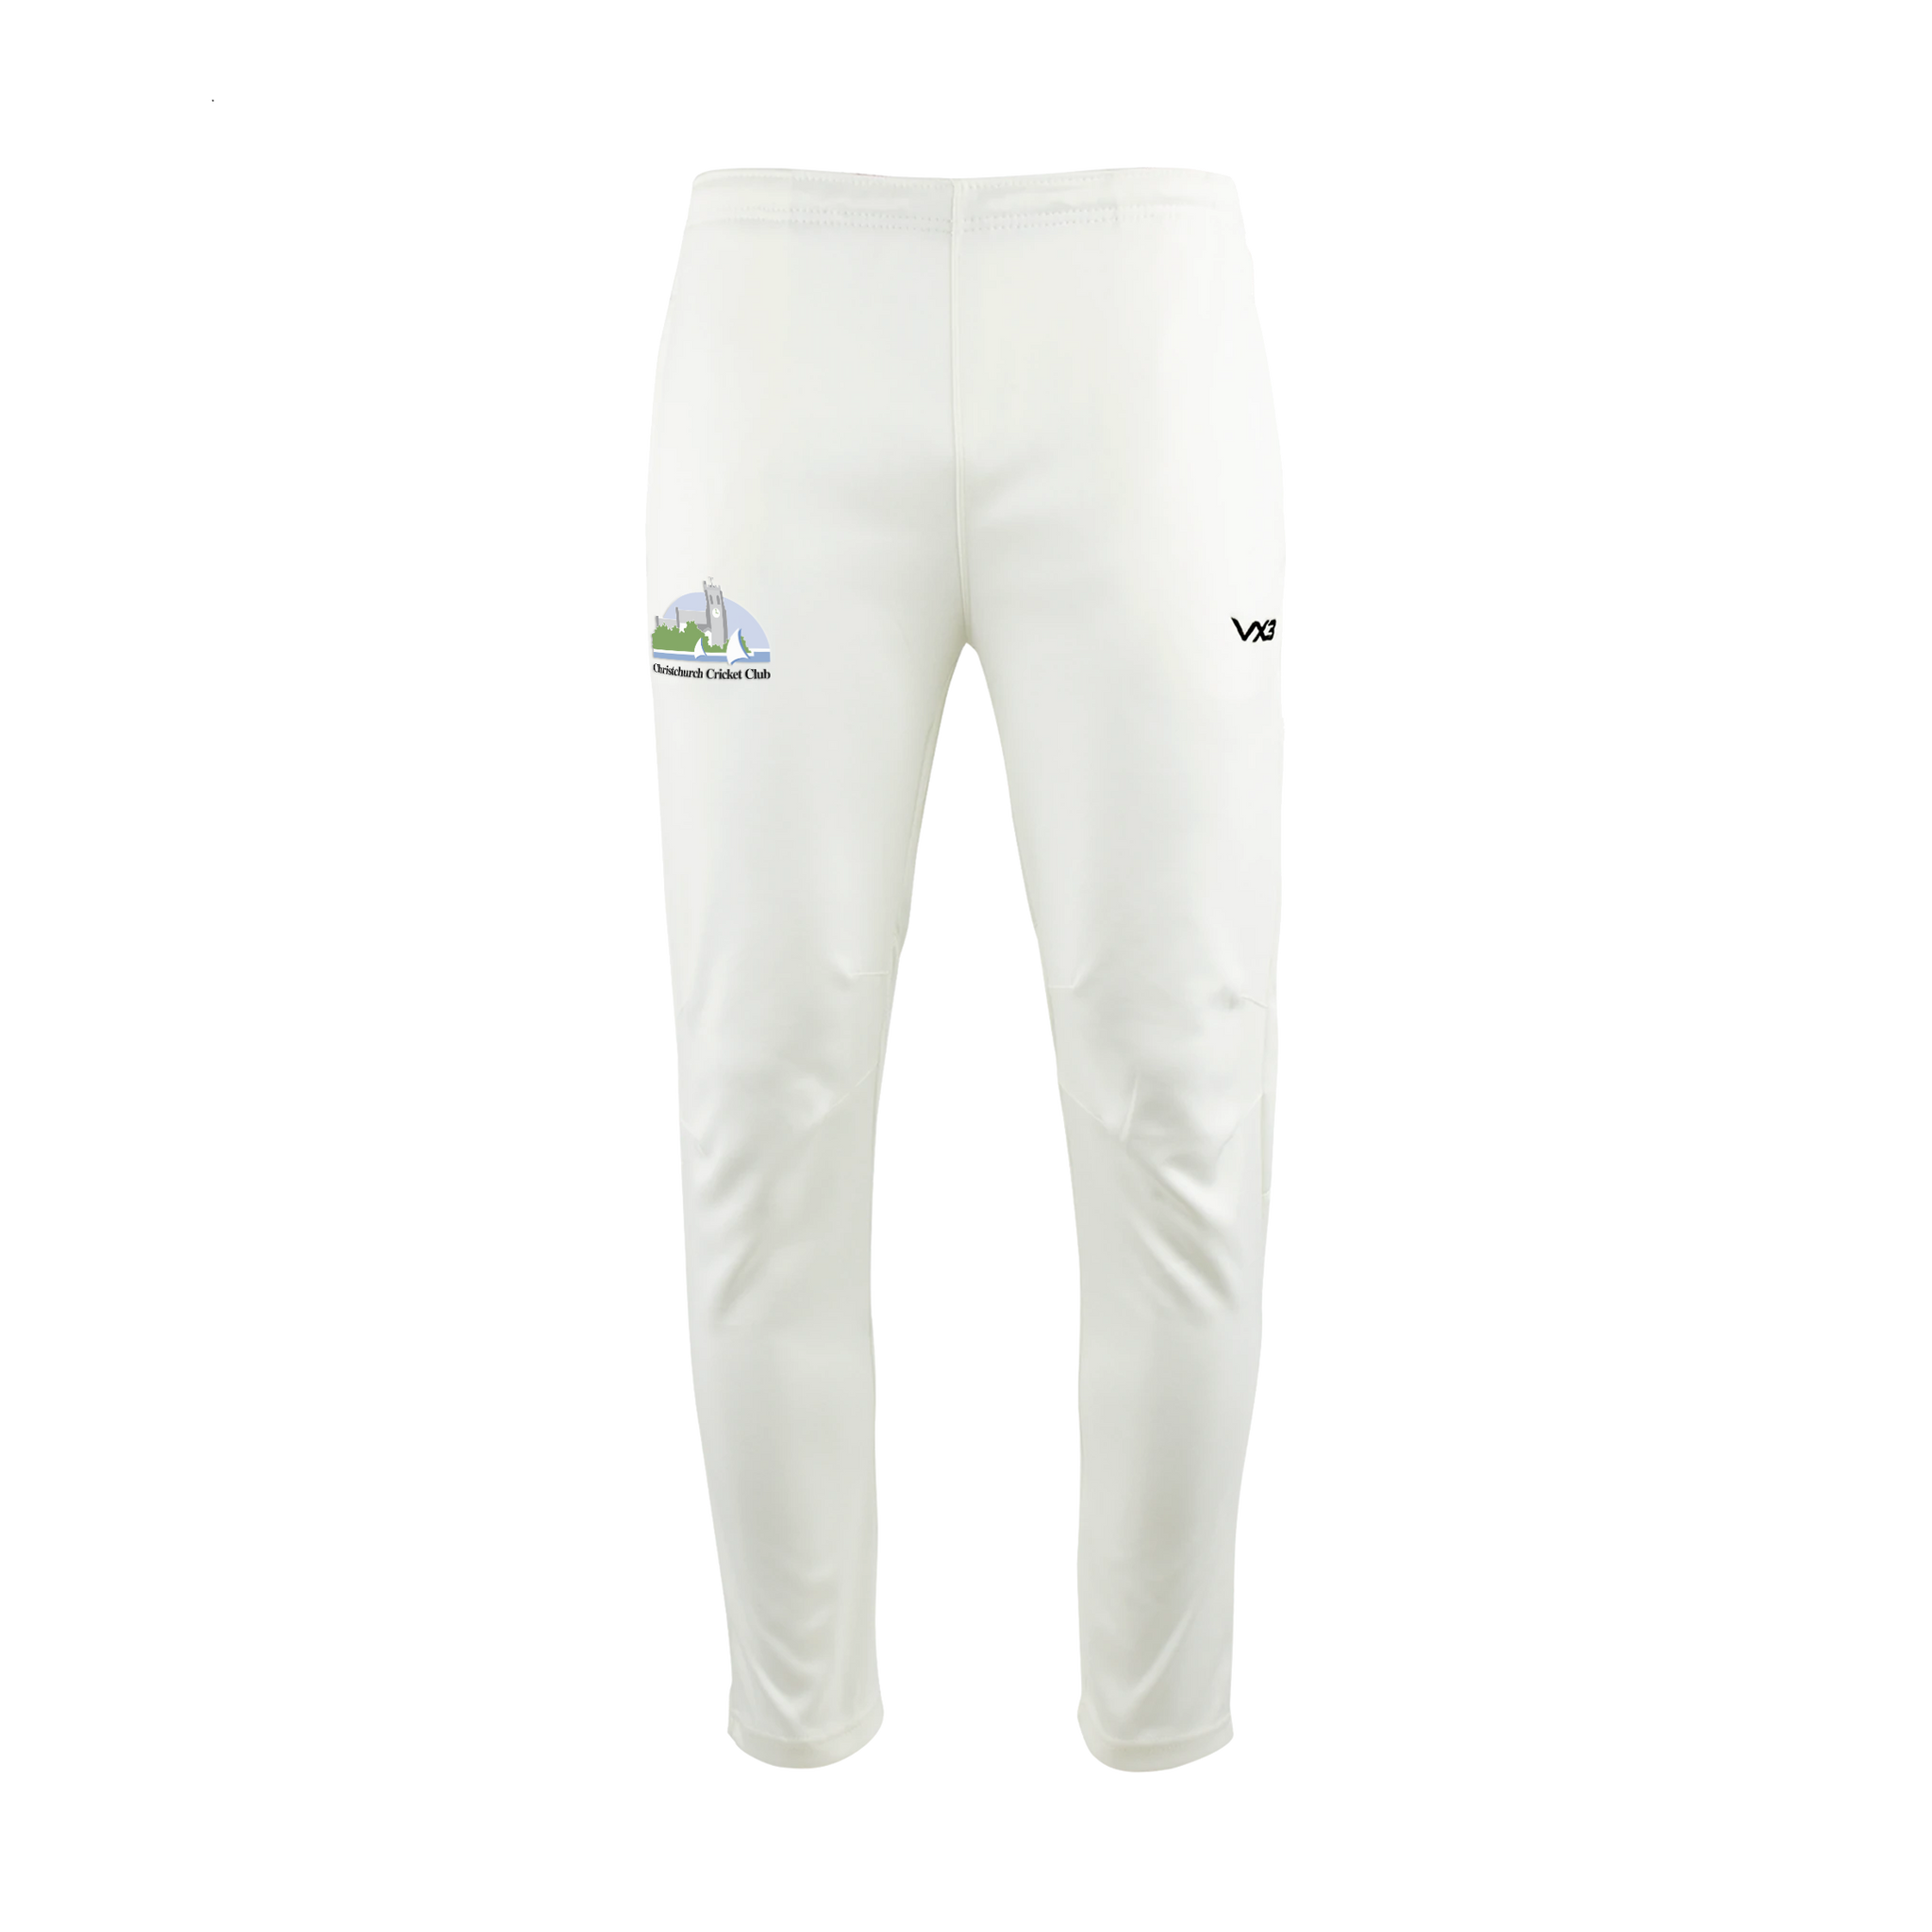 Black Cricket Track Pants for Men's | Cricket Team Trouser Bottom